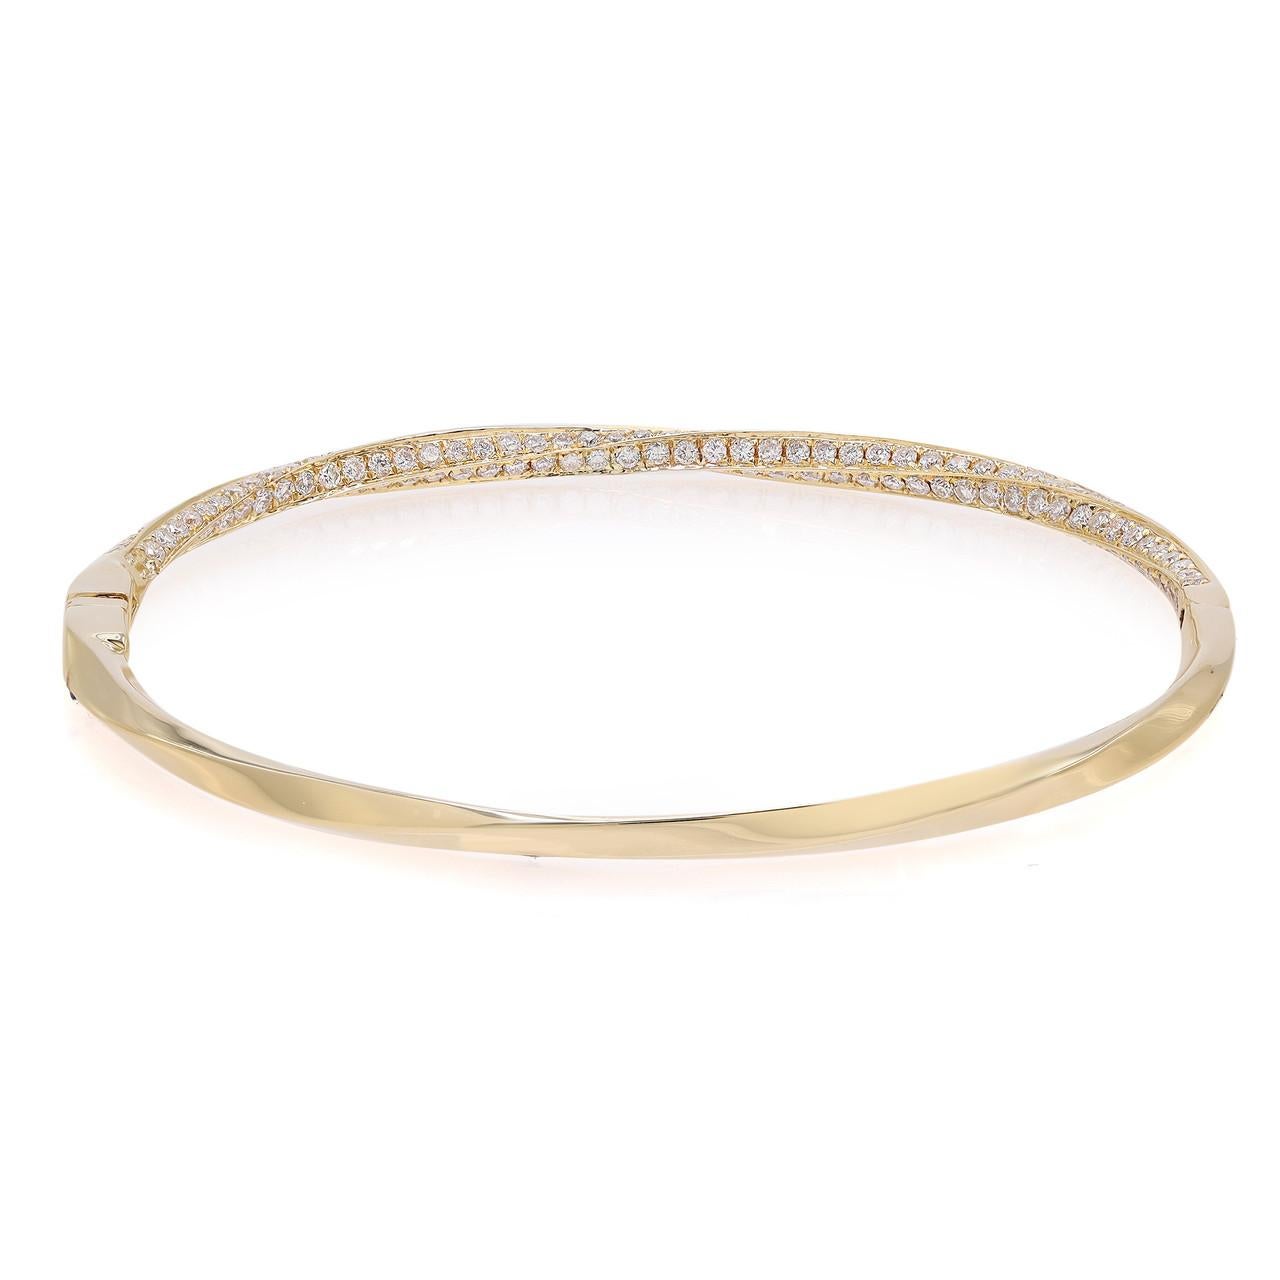 Voici notre exquis bracelet torsadé en or jaune, orné de diamants ronds de 2.07 carats. Cette pièce captivante allie l'élégance d'un design torsadé à la brillance de diamants pavés, créant ainsi un accessoire véritablement éblouissant. Confectionné